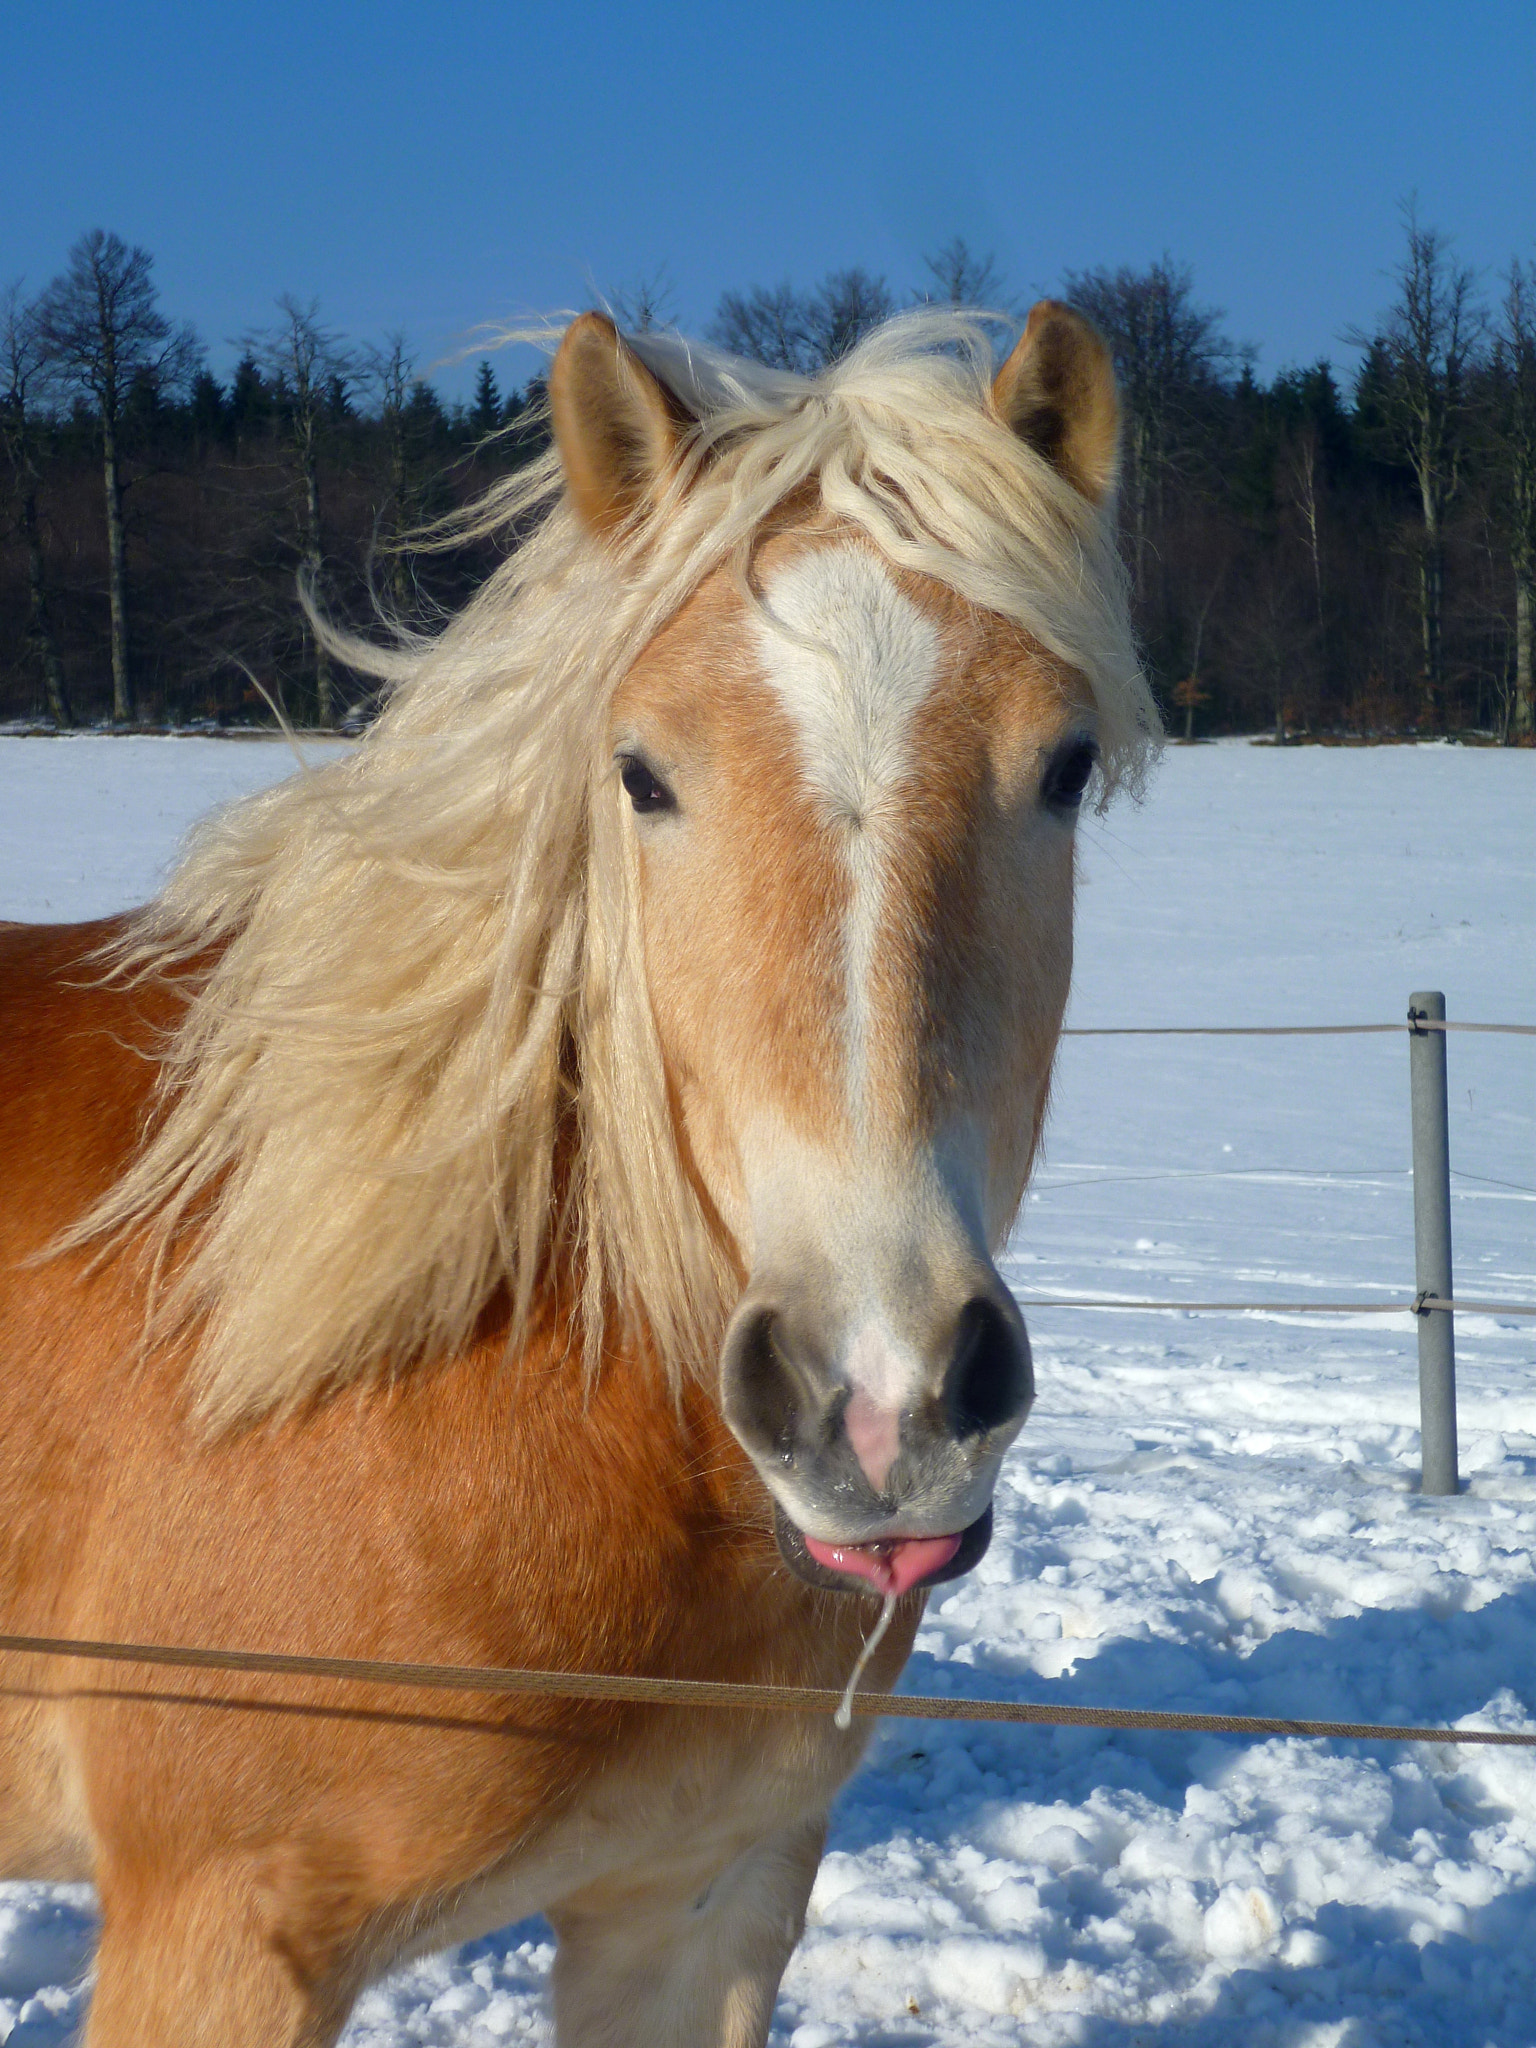 Panasonic DMC-FS10 sample photo. Kůň který si odplivnul. --- spitting horse photography